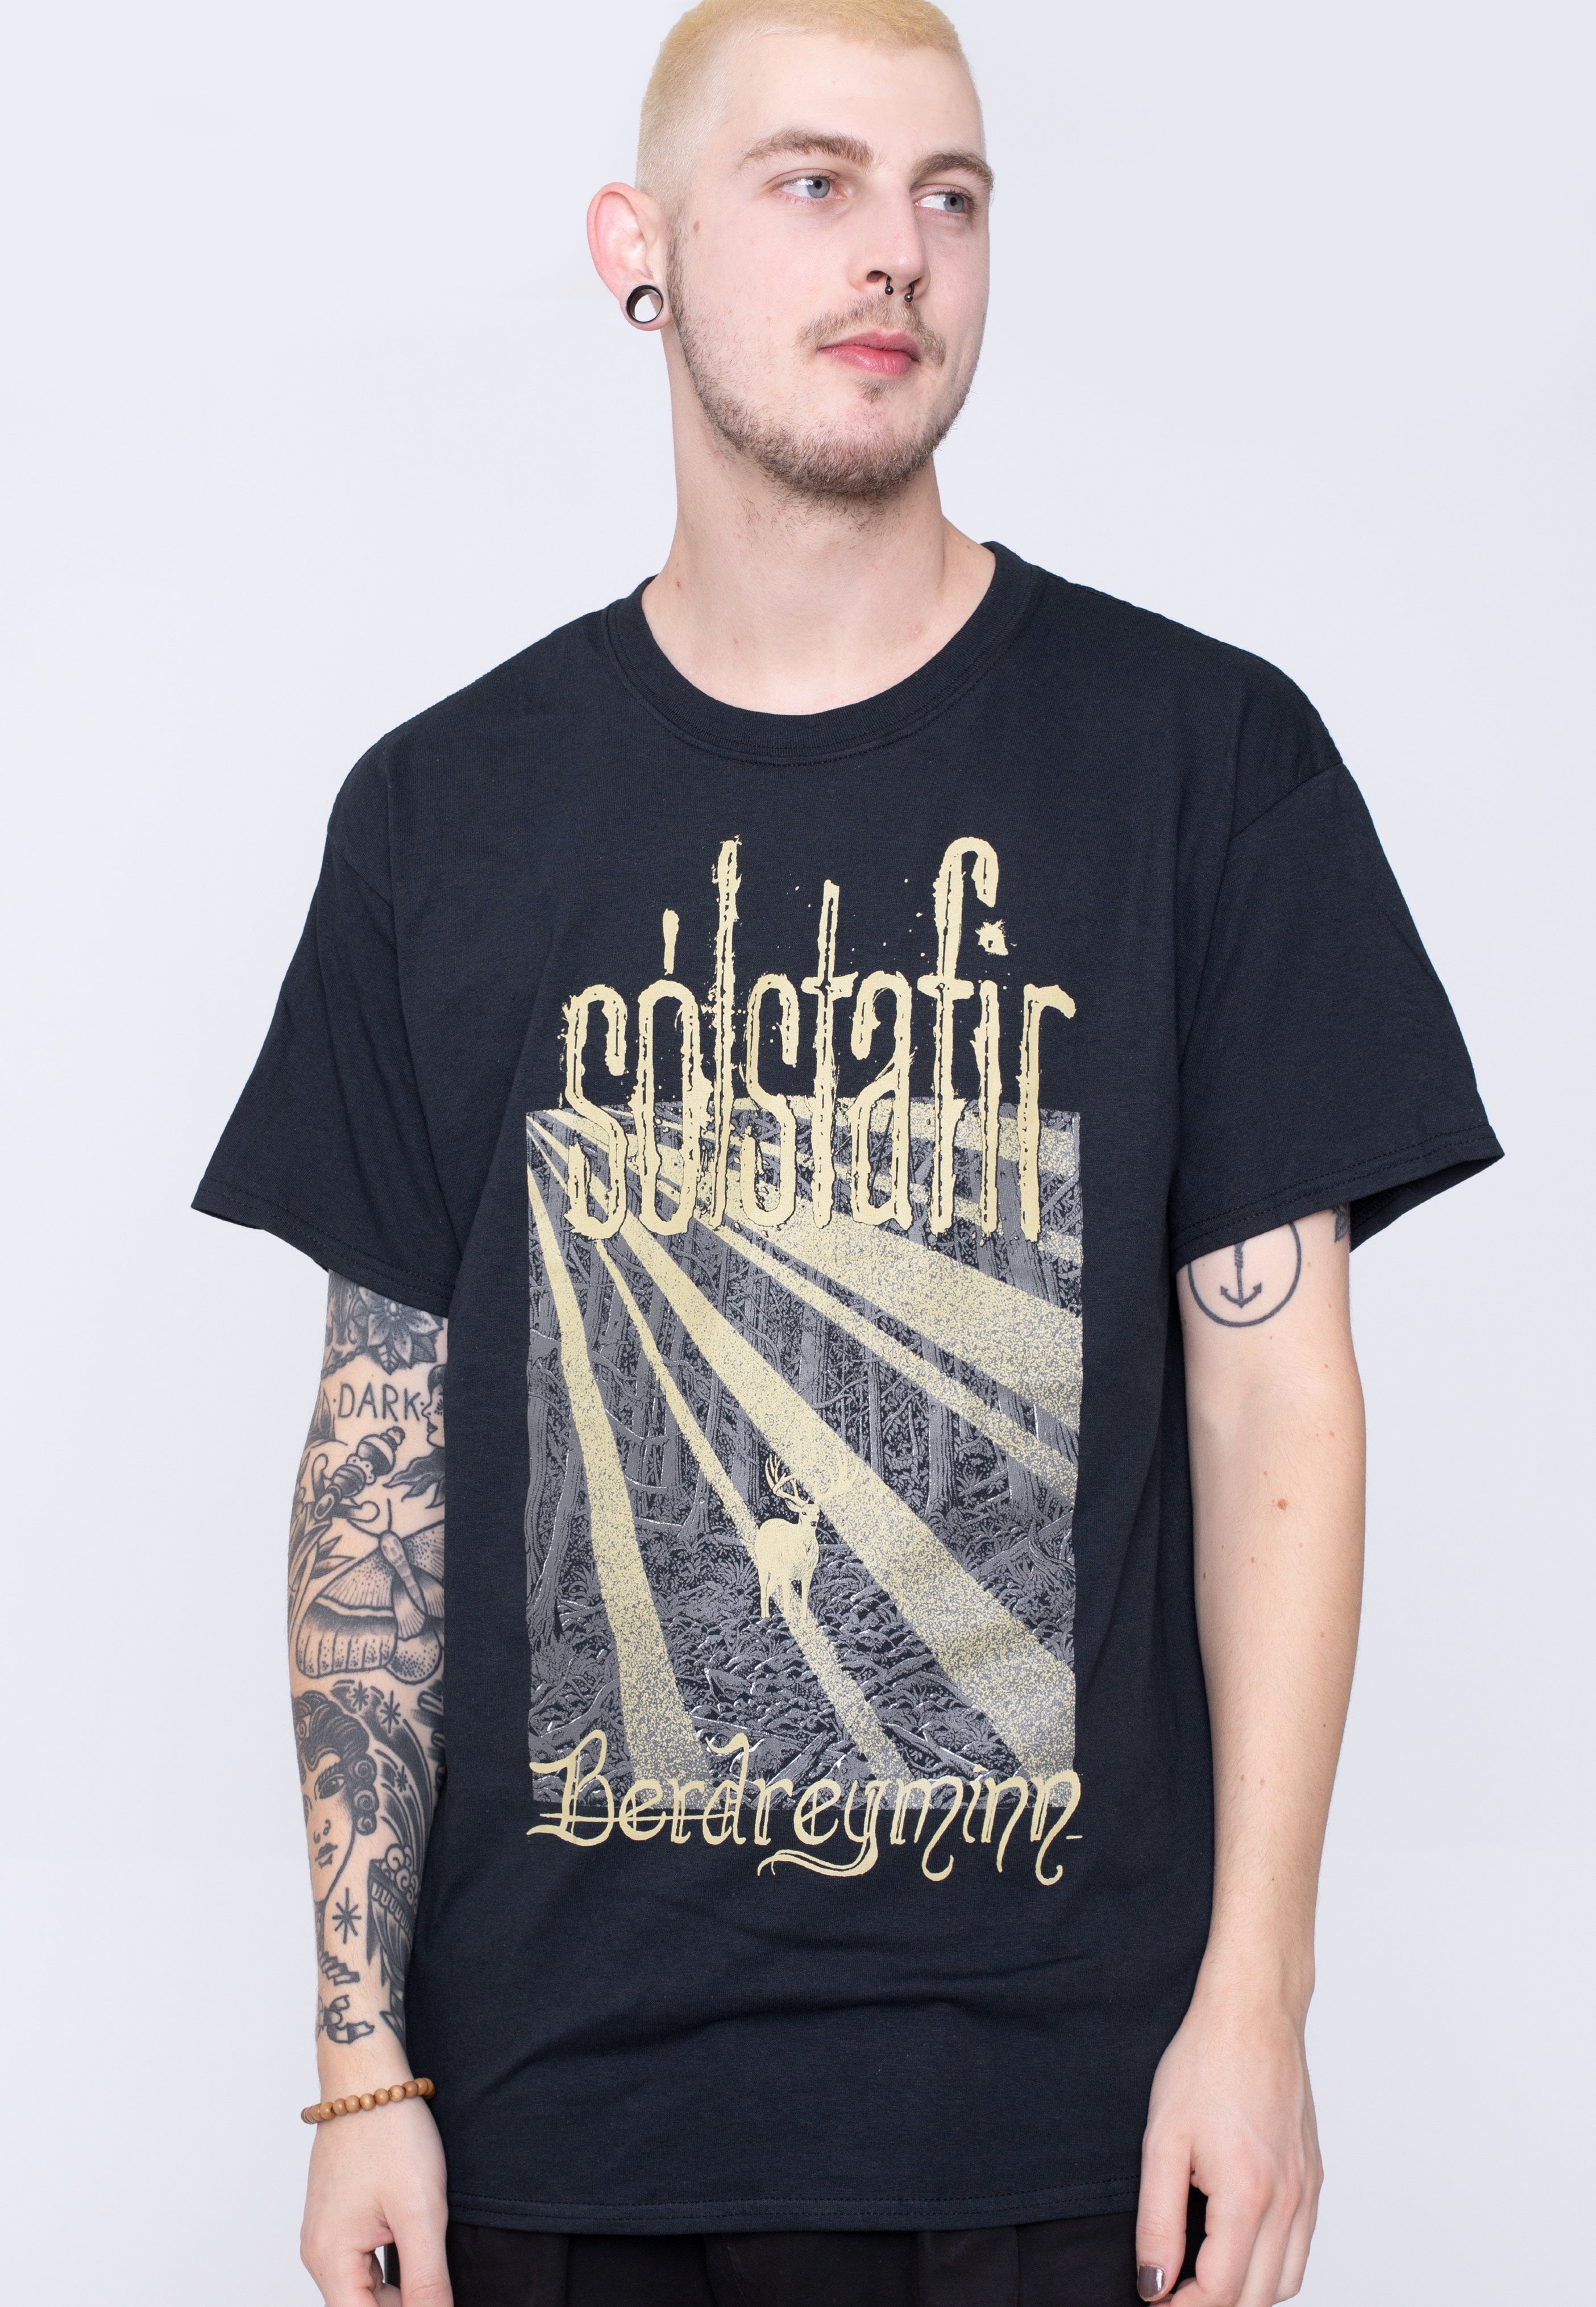 Solstafir - Berdreyminn - T-Shirt